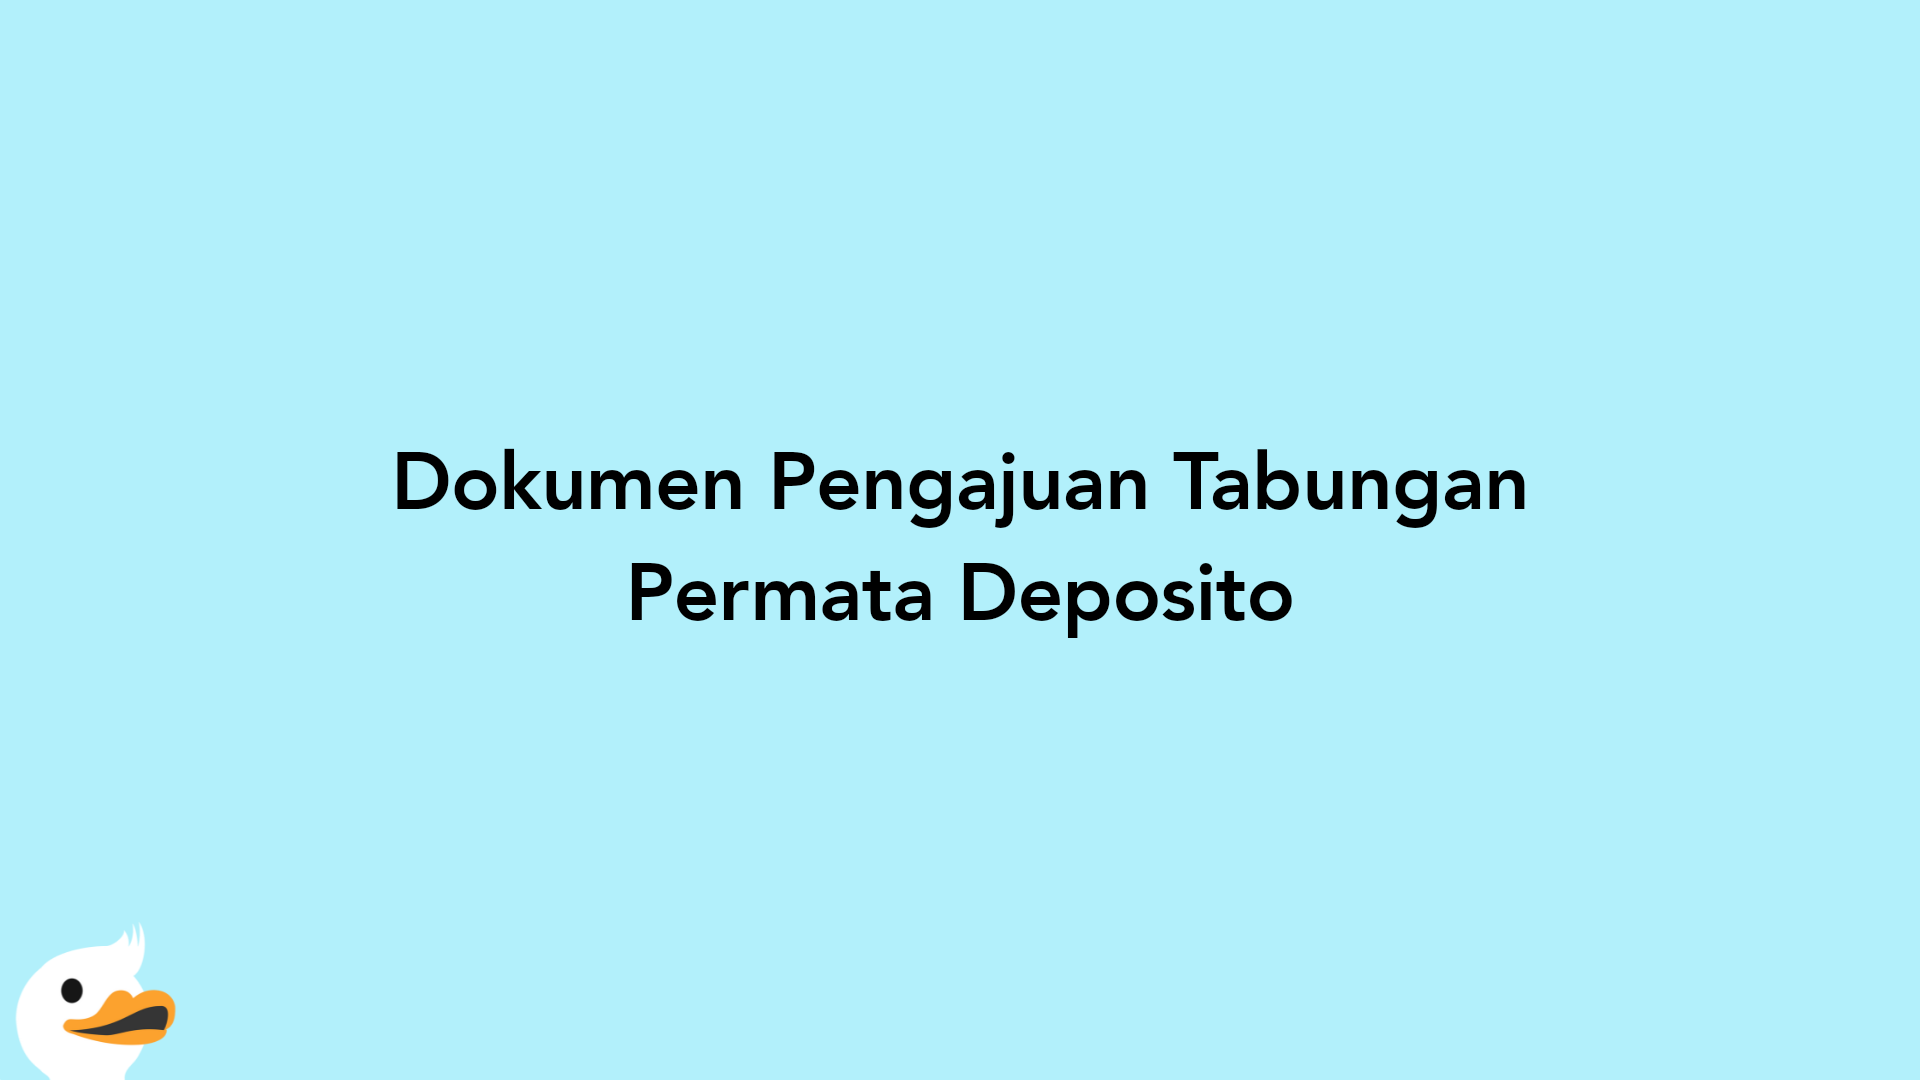 Dokumen Pengajuan Tabungan Permata Deposito